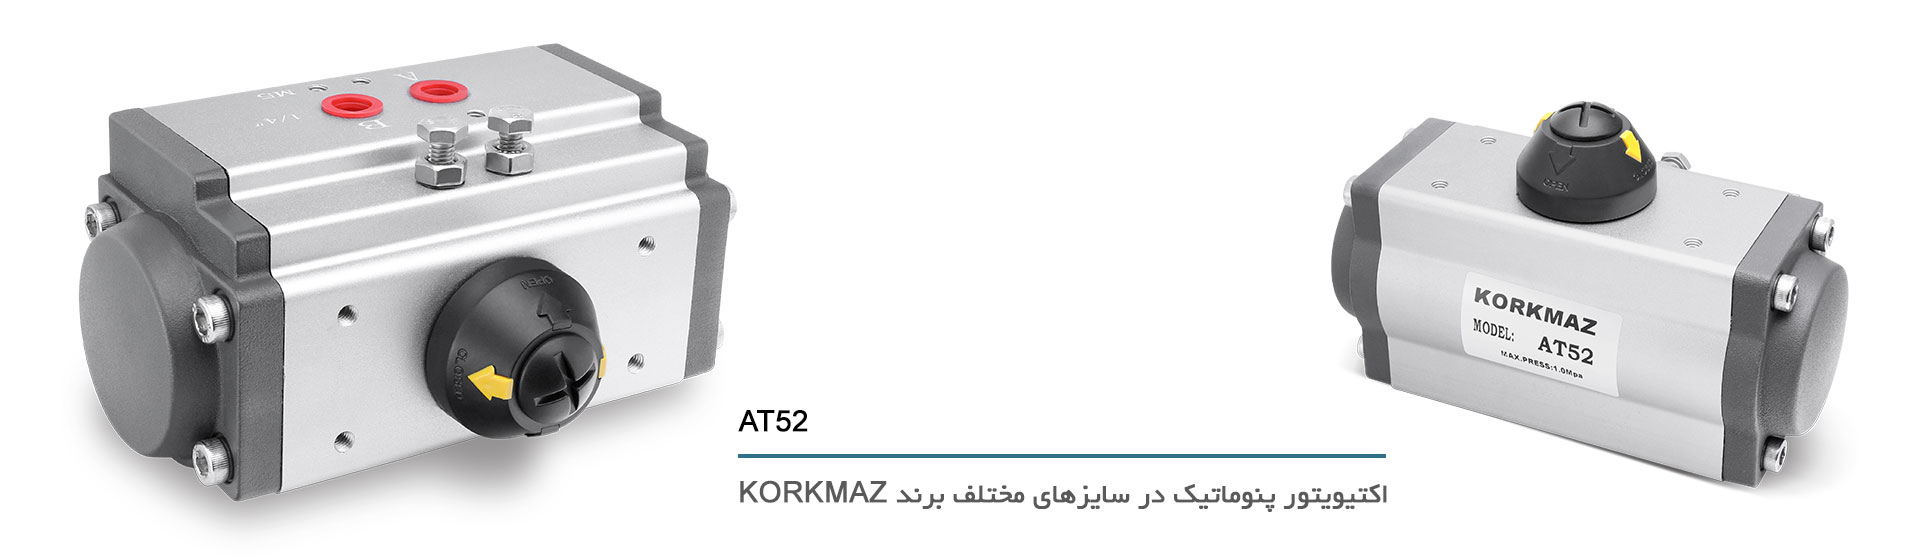 اکتیویتور پنوماتیک در سایز های مختلف برند کورکماز, AT52